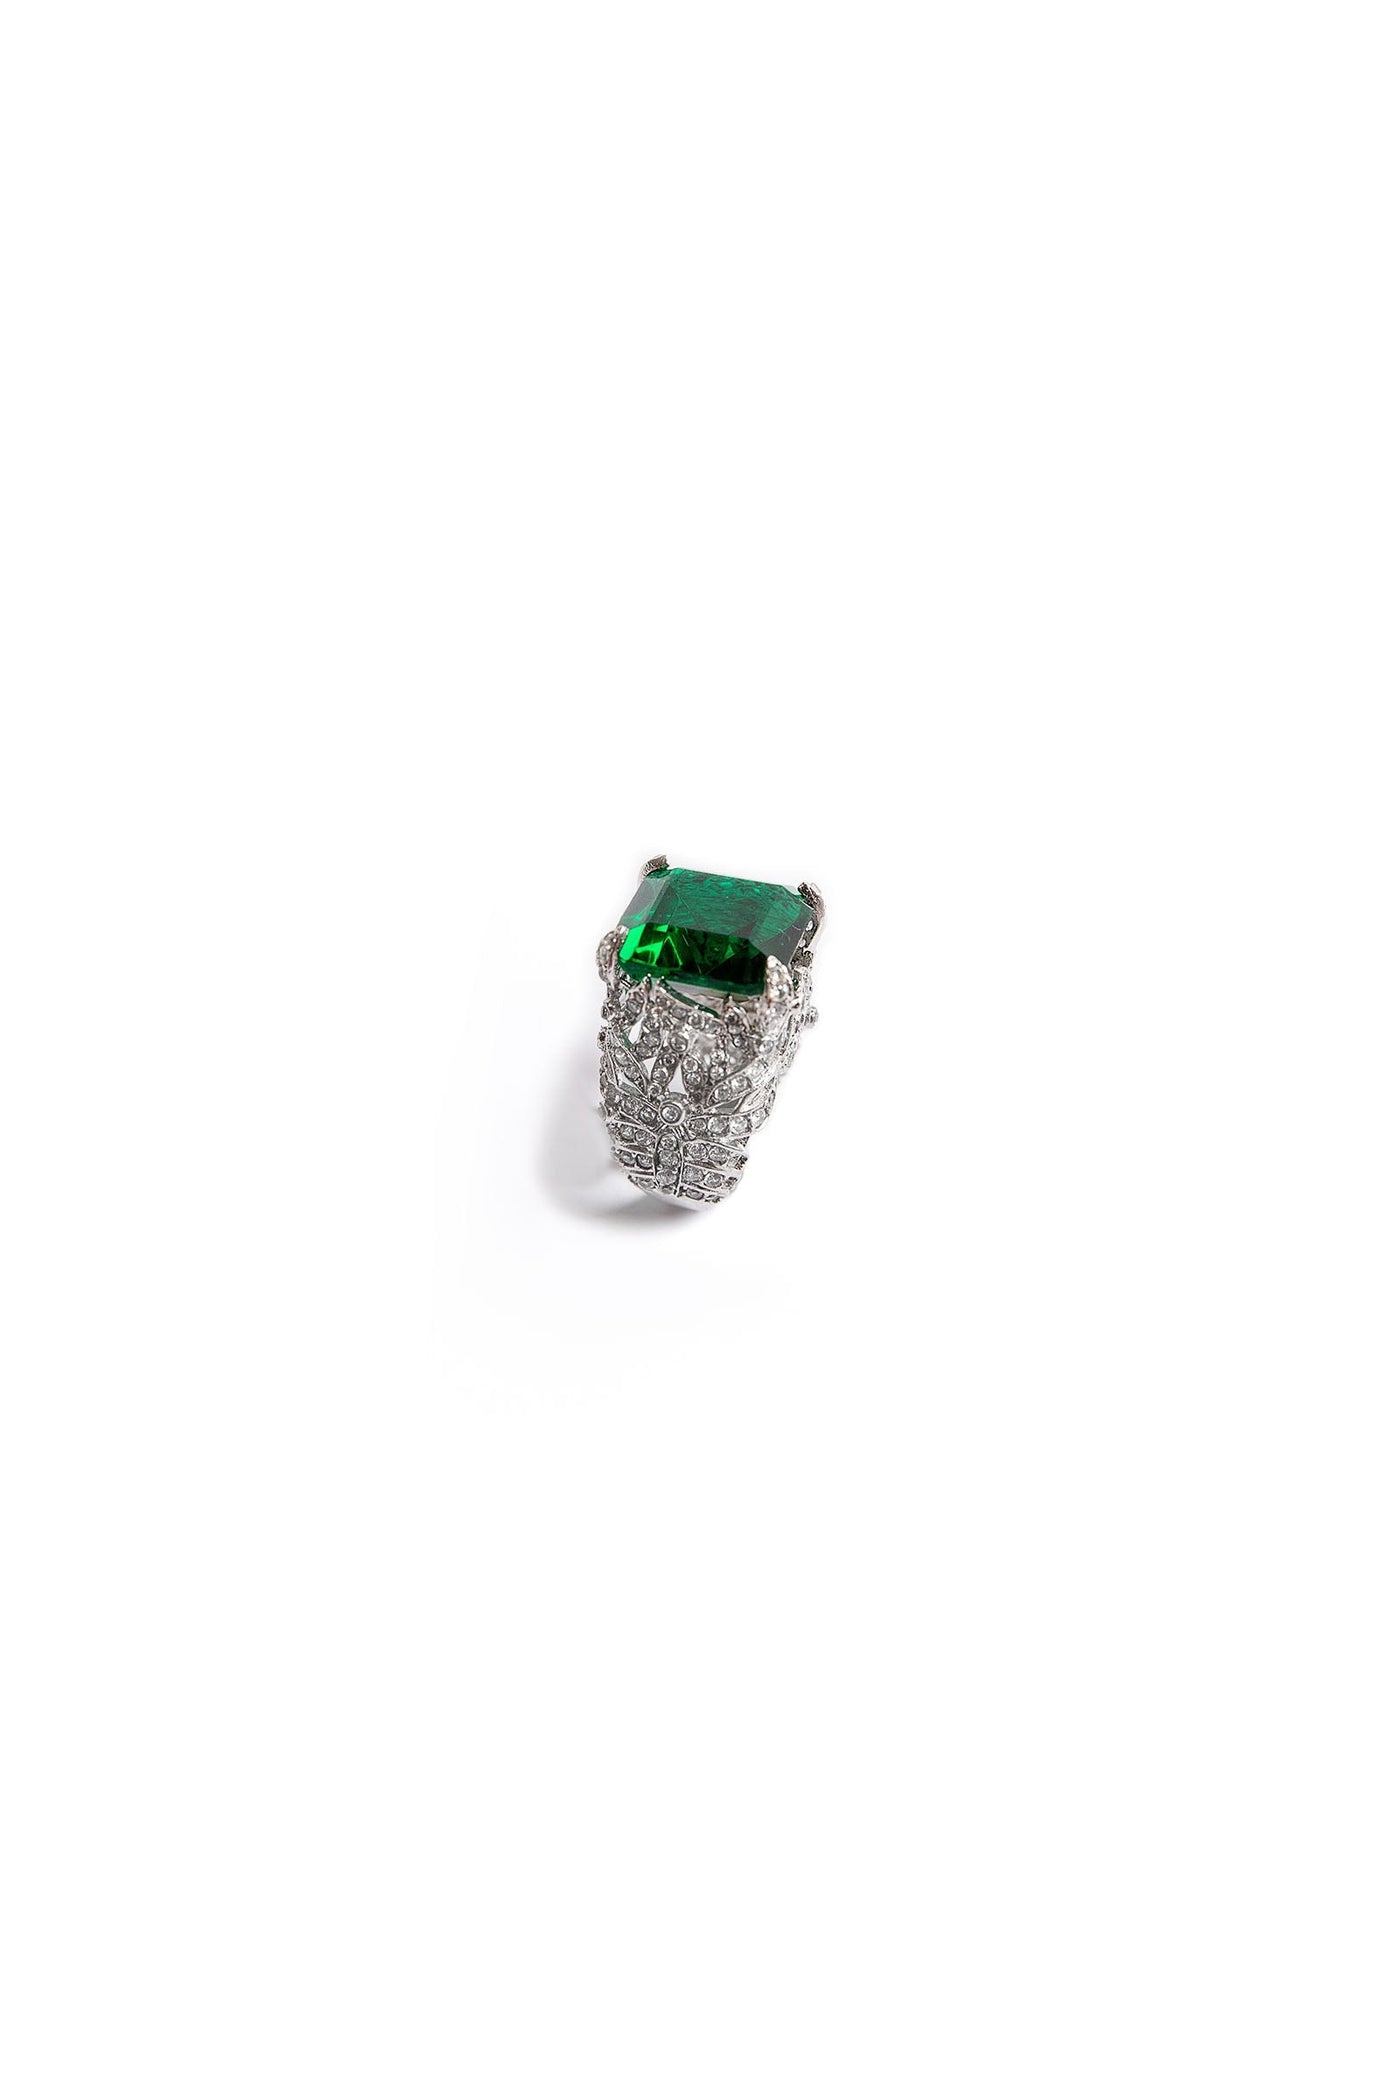 JRG-W23-06/R1-Emerald Green